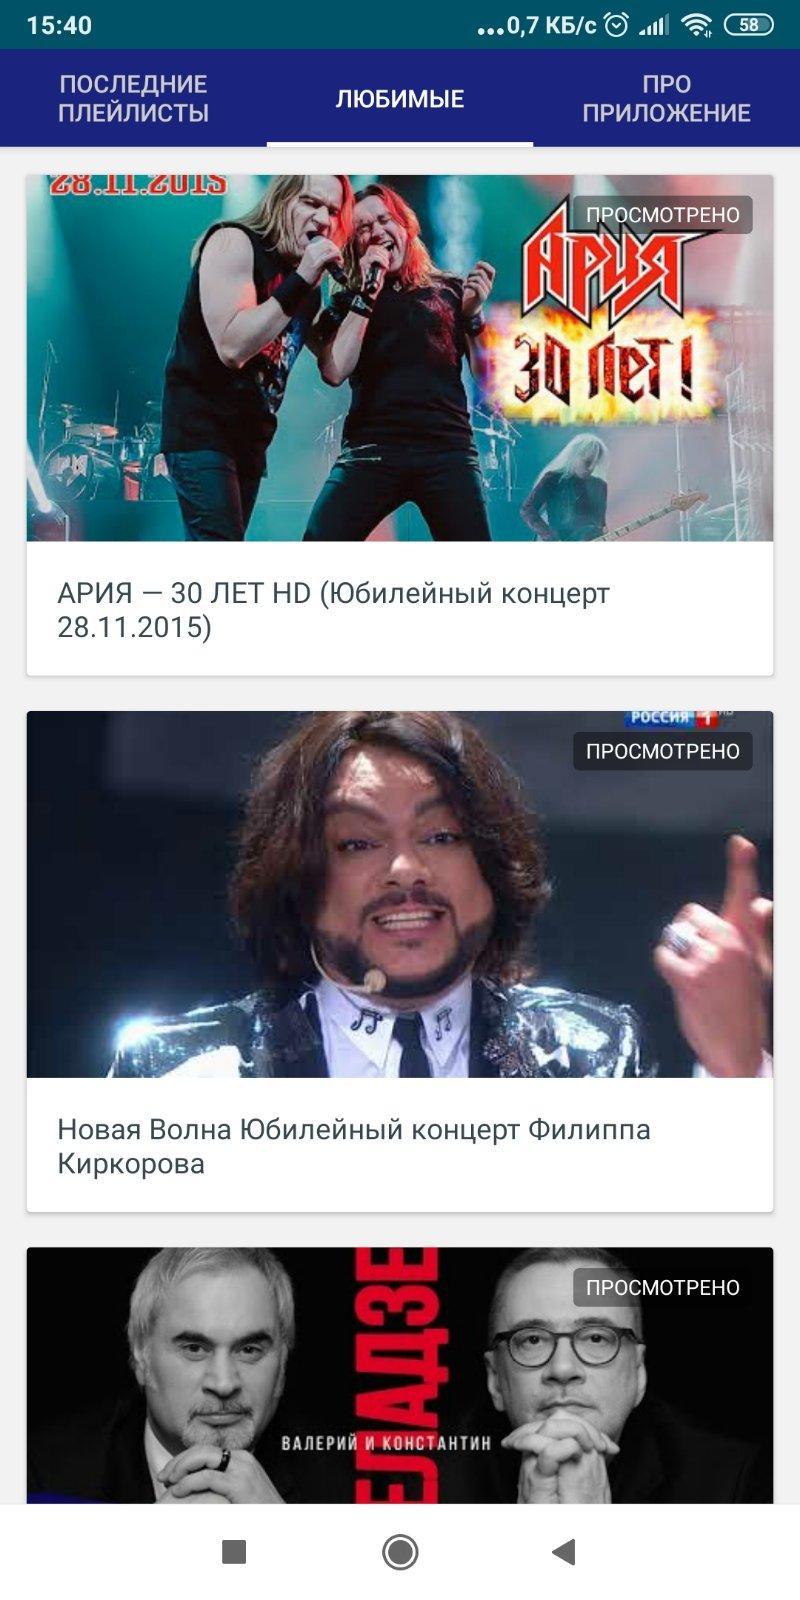 Концерты русский перевод. Скриншот концерты.